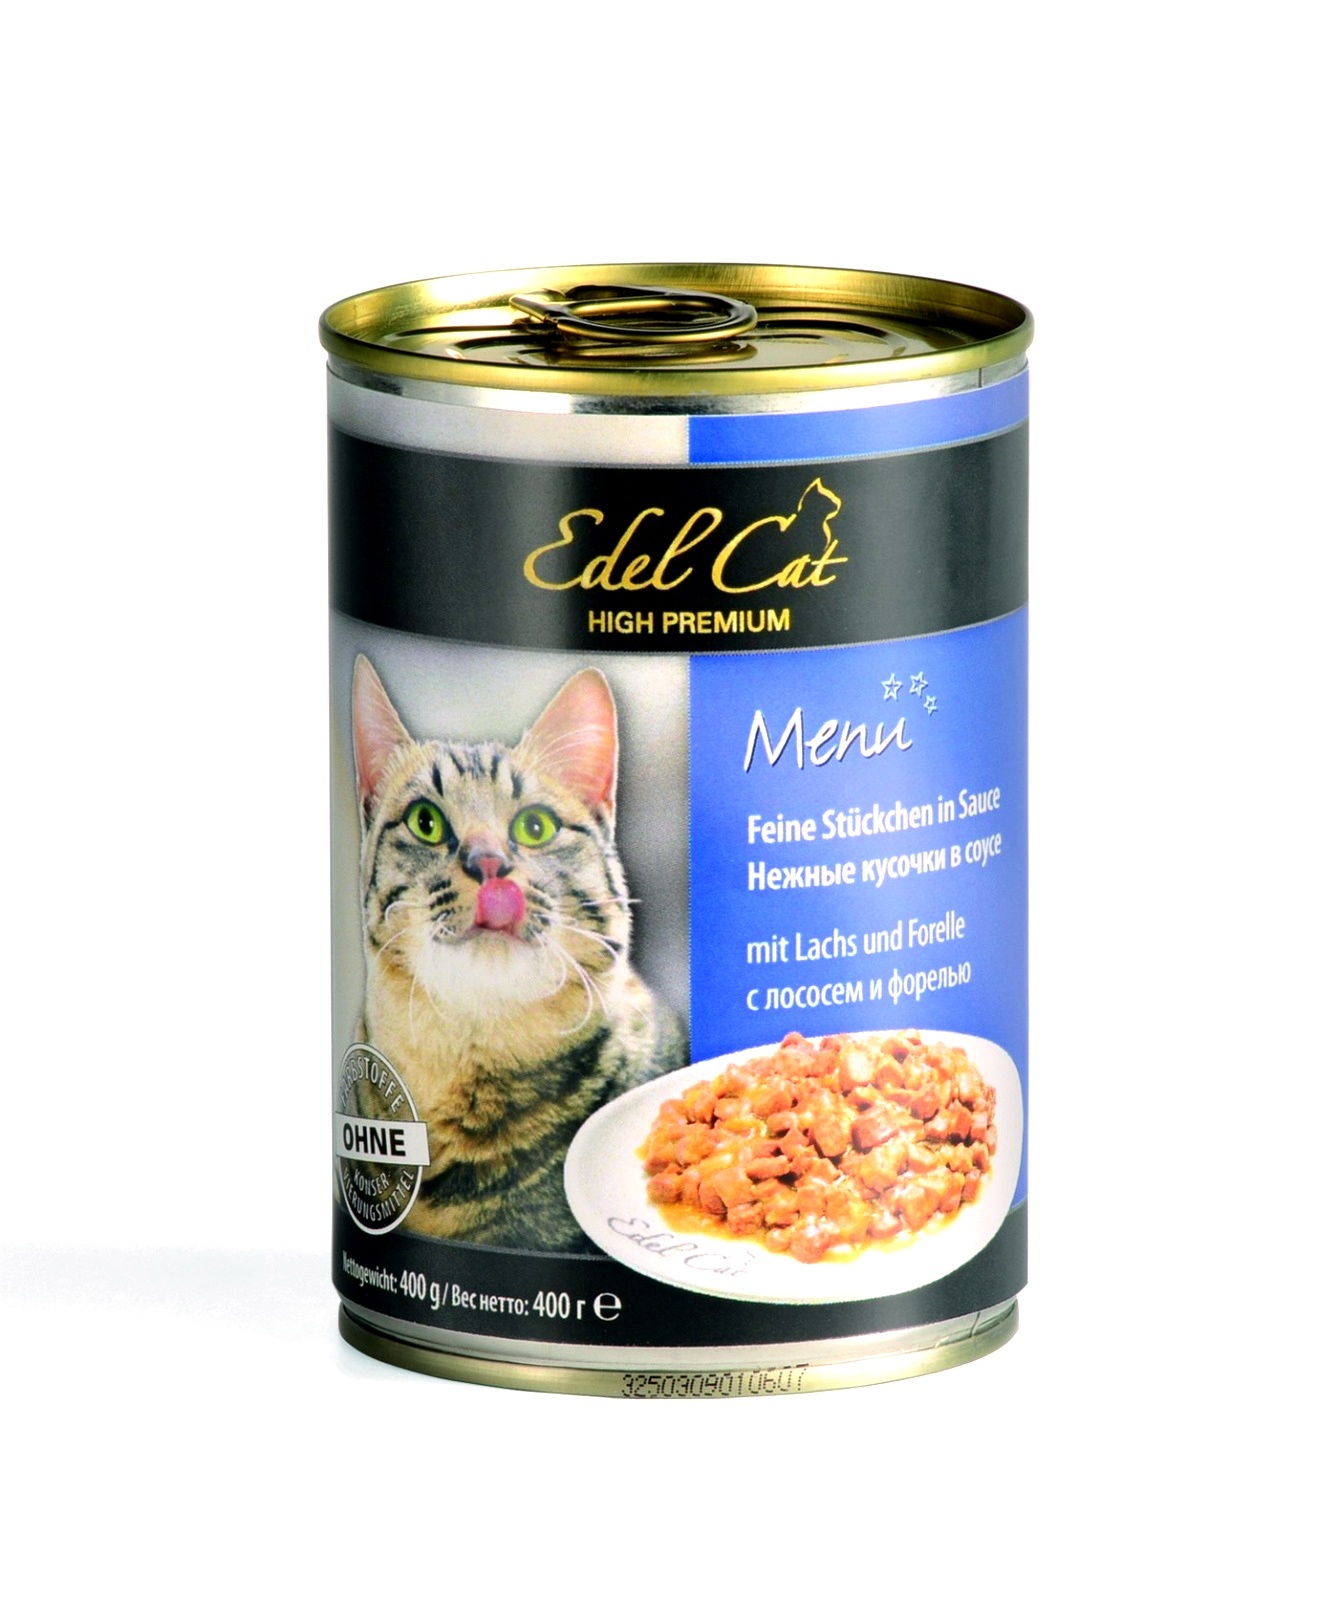 Edel Cat нежные кусочки в соусе с лососем и форелью (400 г) Edel Cat нежные кусочки в соусе с лососем и форелью (400 г) - фото 1